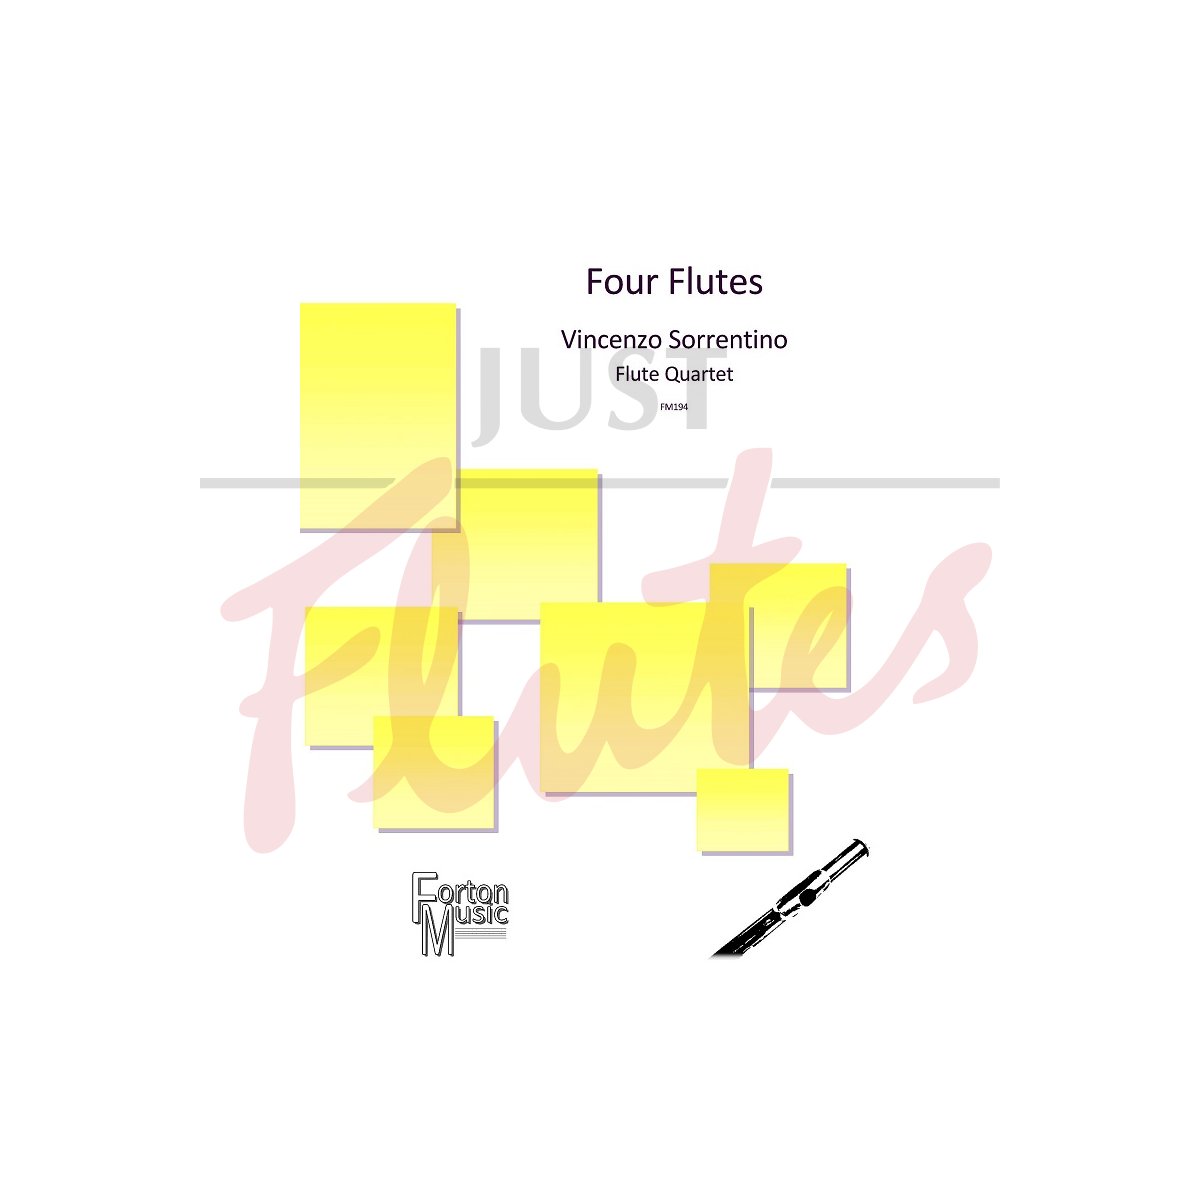 Four Flutes